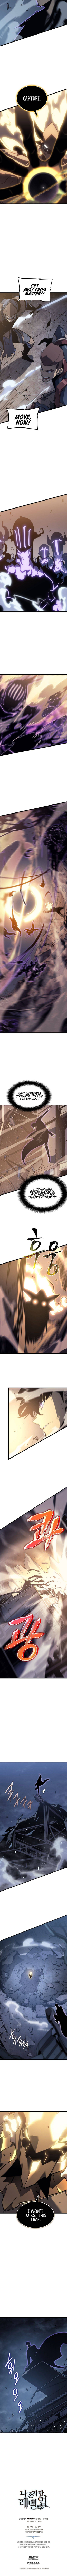 Solo Leveling Manga Manga Chapter - 146 - image 5